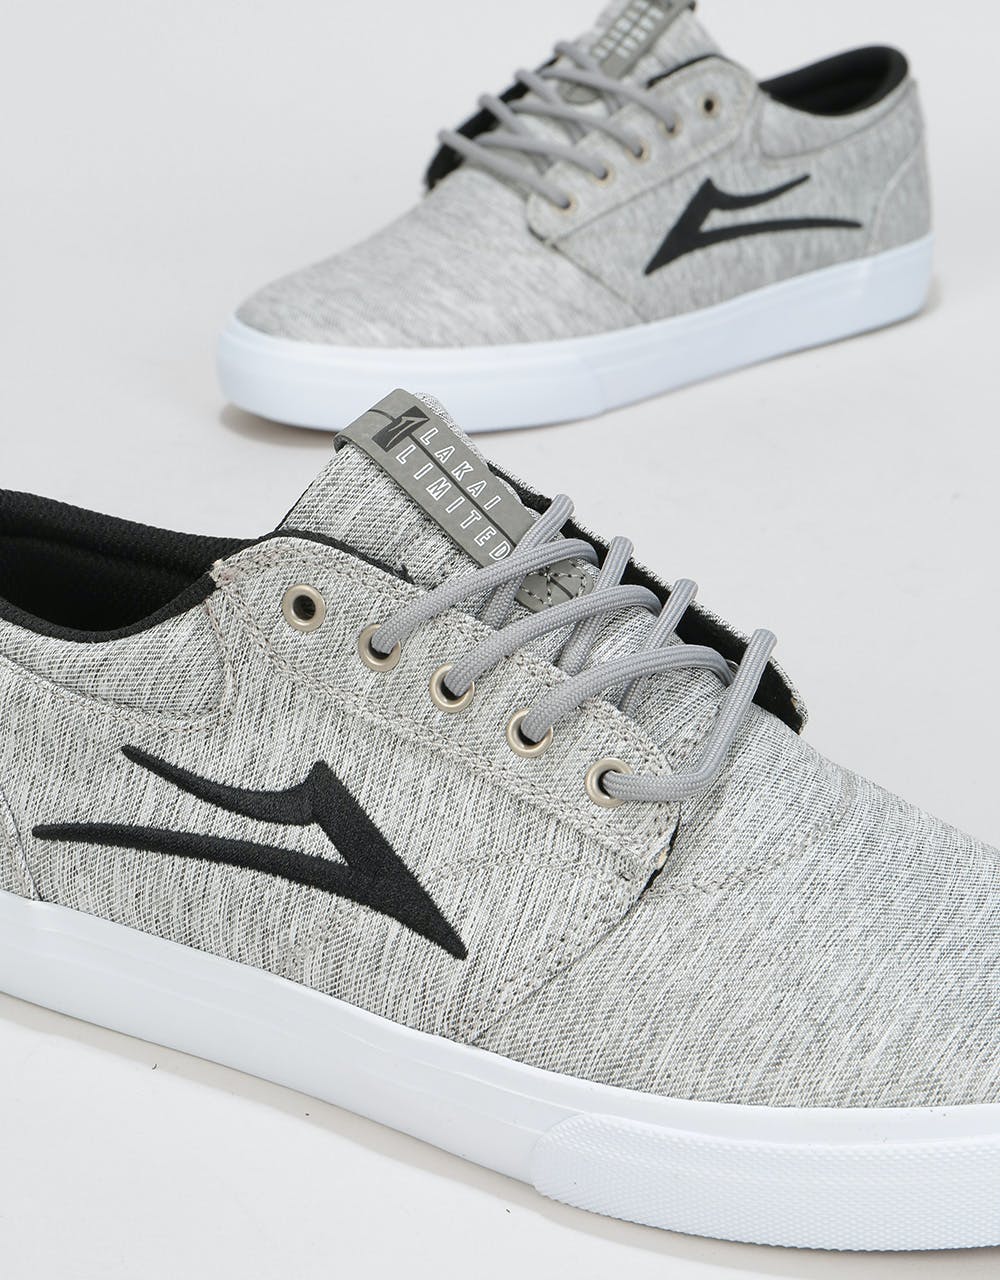 Lakai Griffin Skate Shoes - Grey/Black Textile